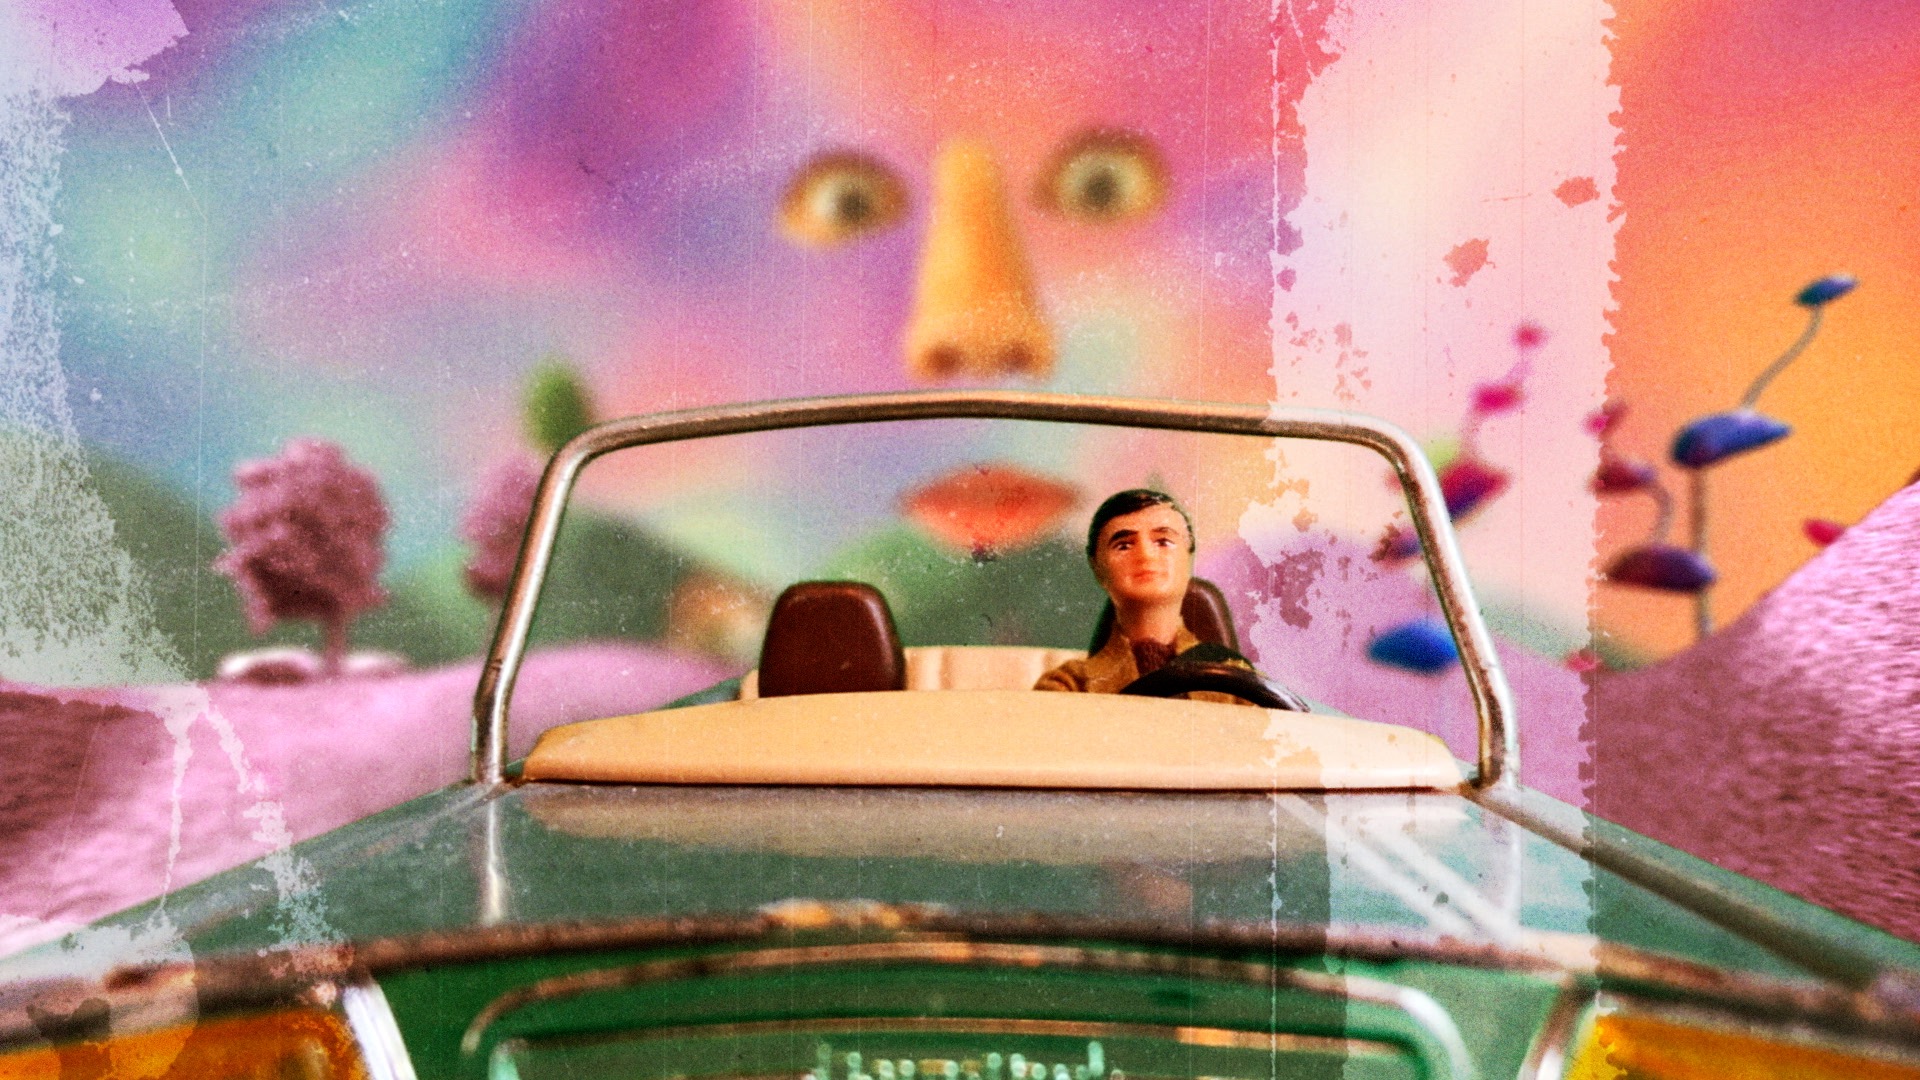 EXCLUSIVE: Sam Barnes 'Daydream Driver' Video Premiere 1